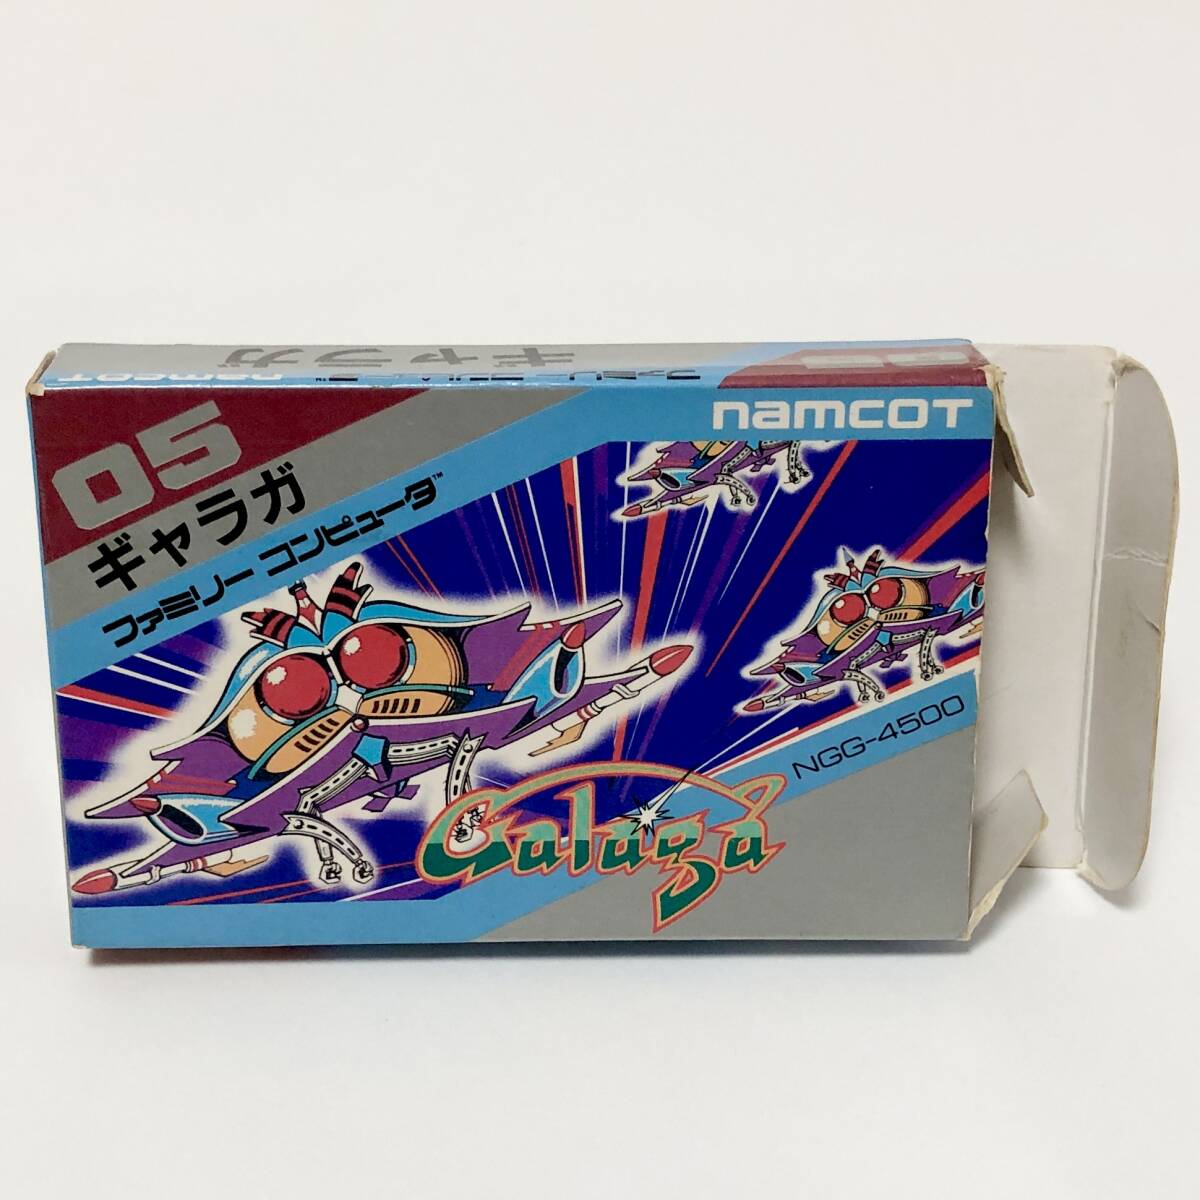 ファミコン ギャラガ 箱説付き 痛みあり 動作確認済み ナムコ ナムコット レトロゲーム Nintendo Famicom Galaga CIB Tested Namco Namcot_画像2